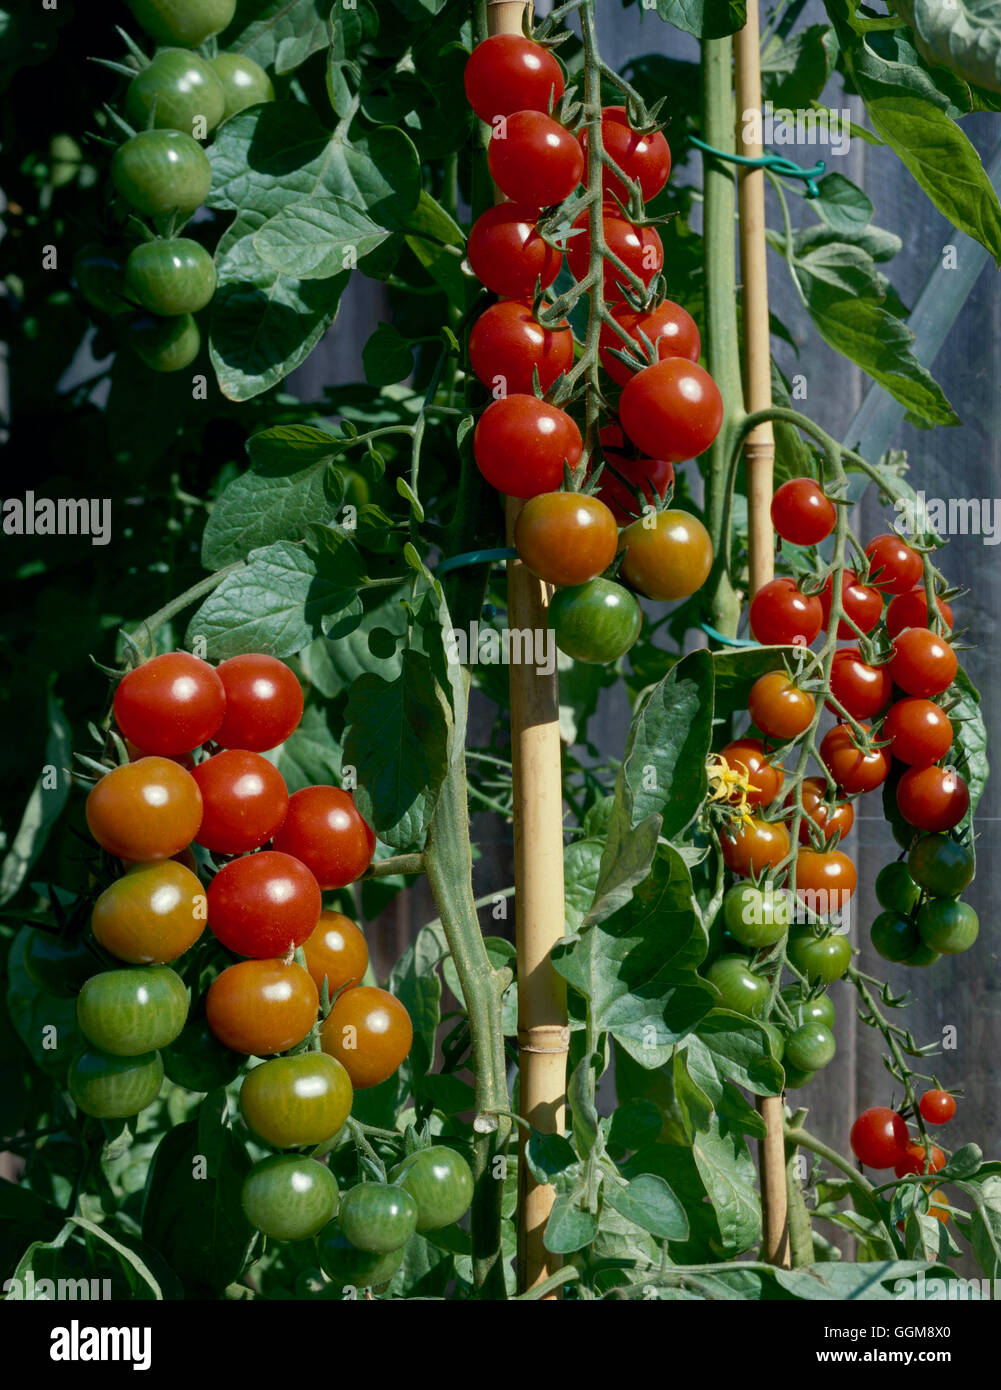 Tomato Gardener S Delight Veg035049 Stock Photo 113542744 Alamy